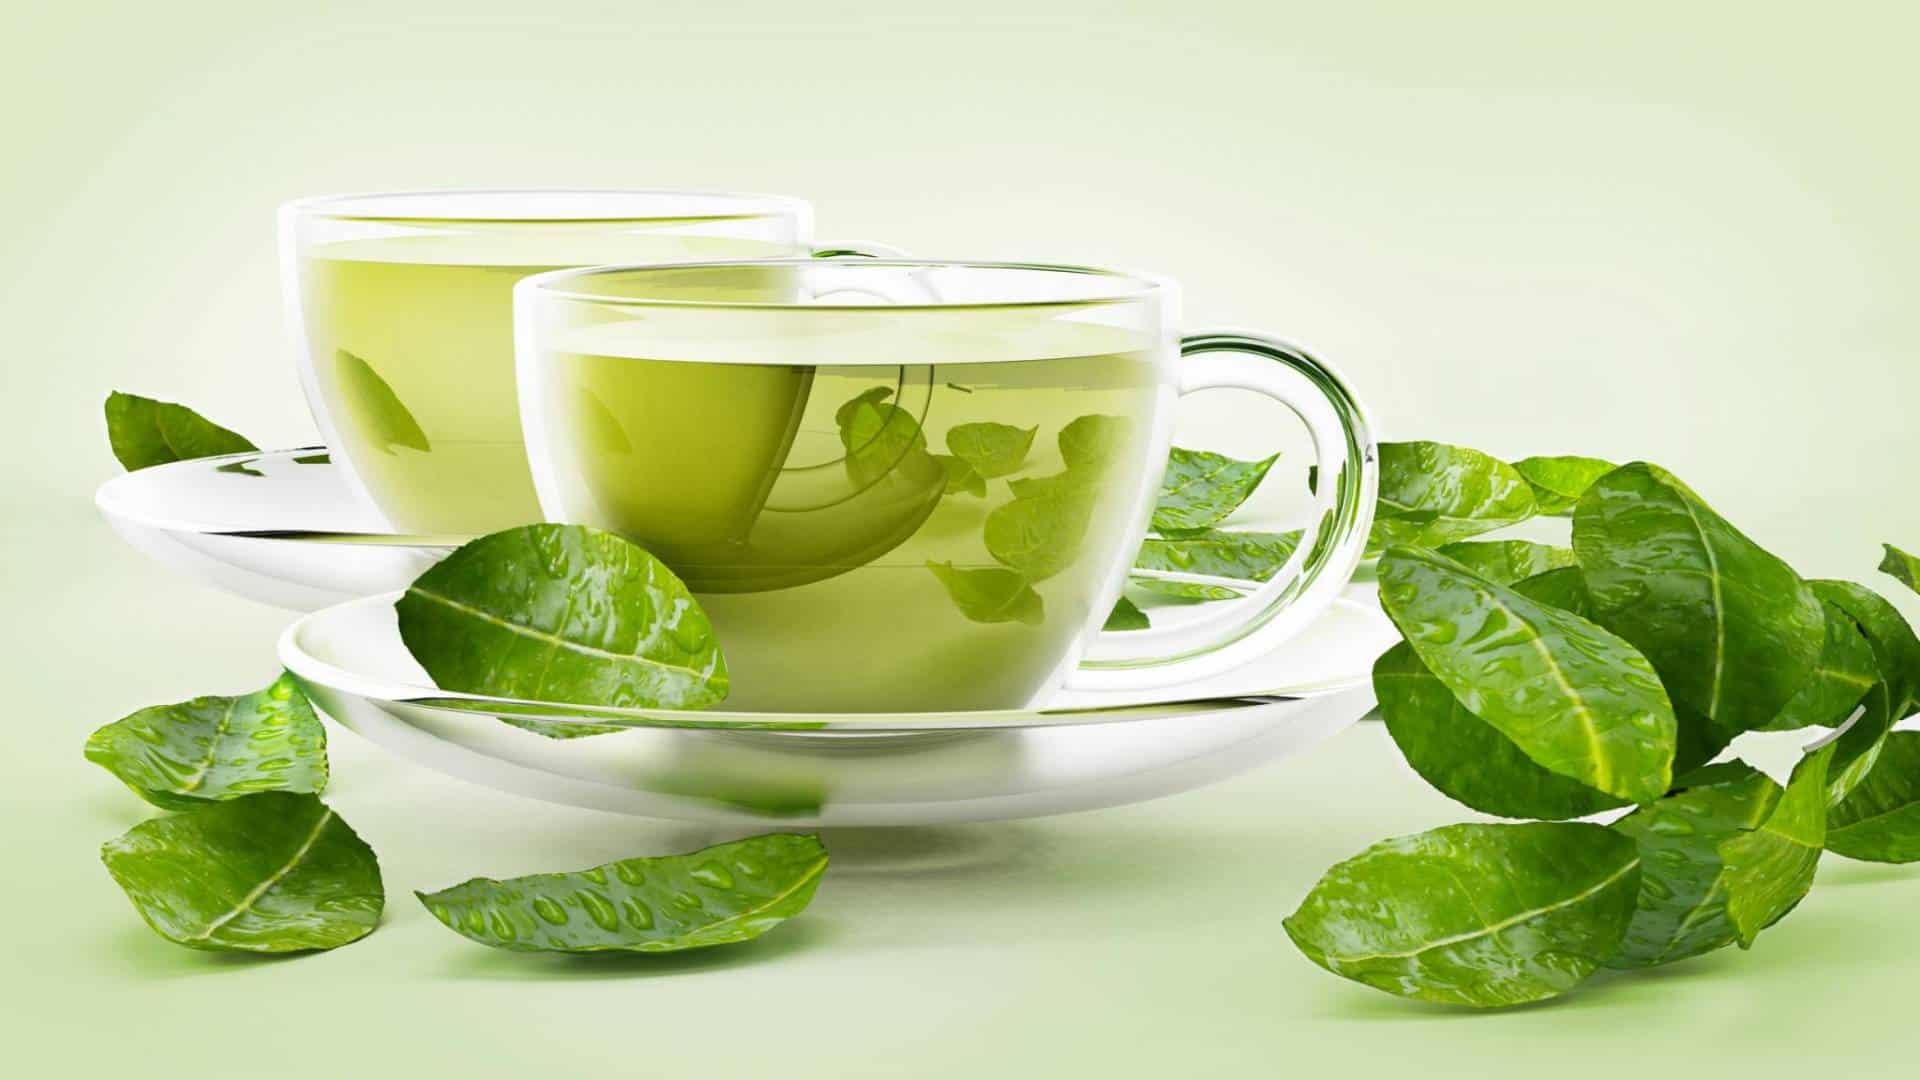 فوائد الشاي الأخضر للرجيم قبل النوم